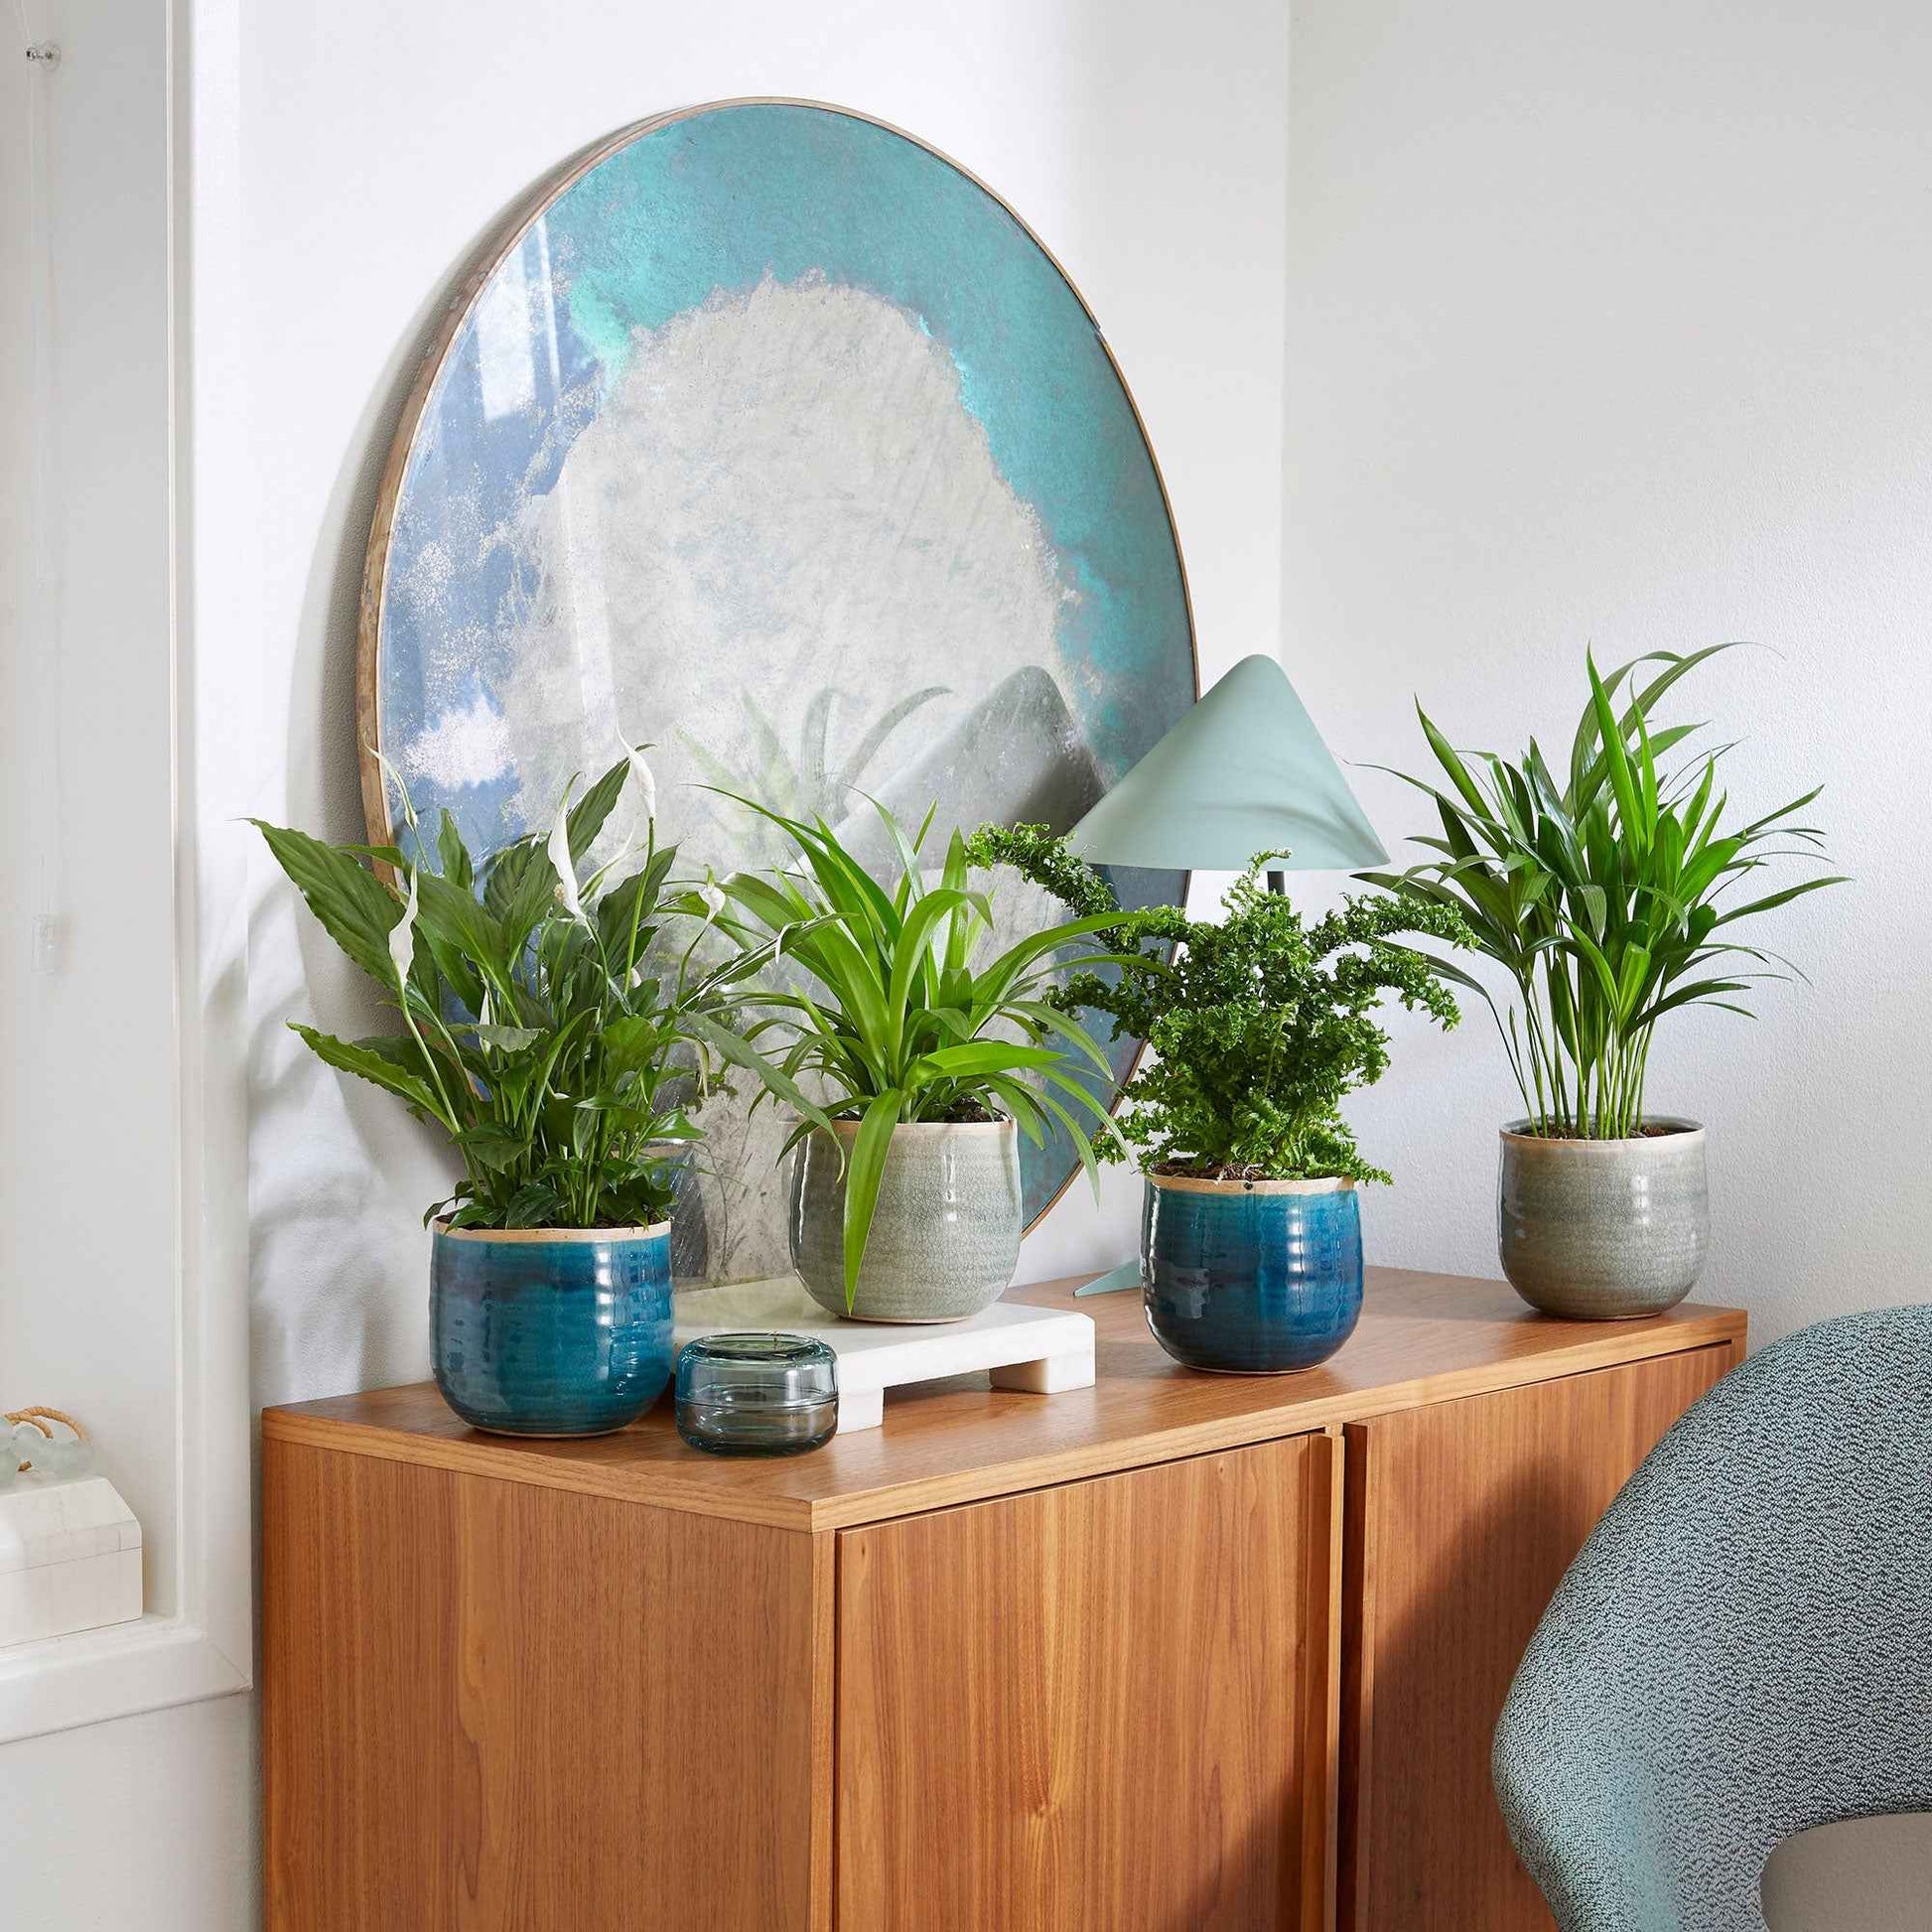 4x Plante d'intérieur purificatrice d'air - Mélange incl. cache-pots verts et bleus - Ensembles de plantes d'intérieur